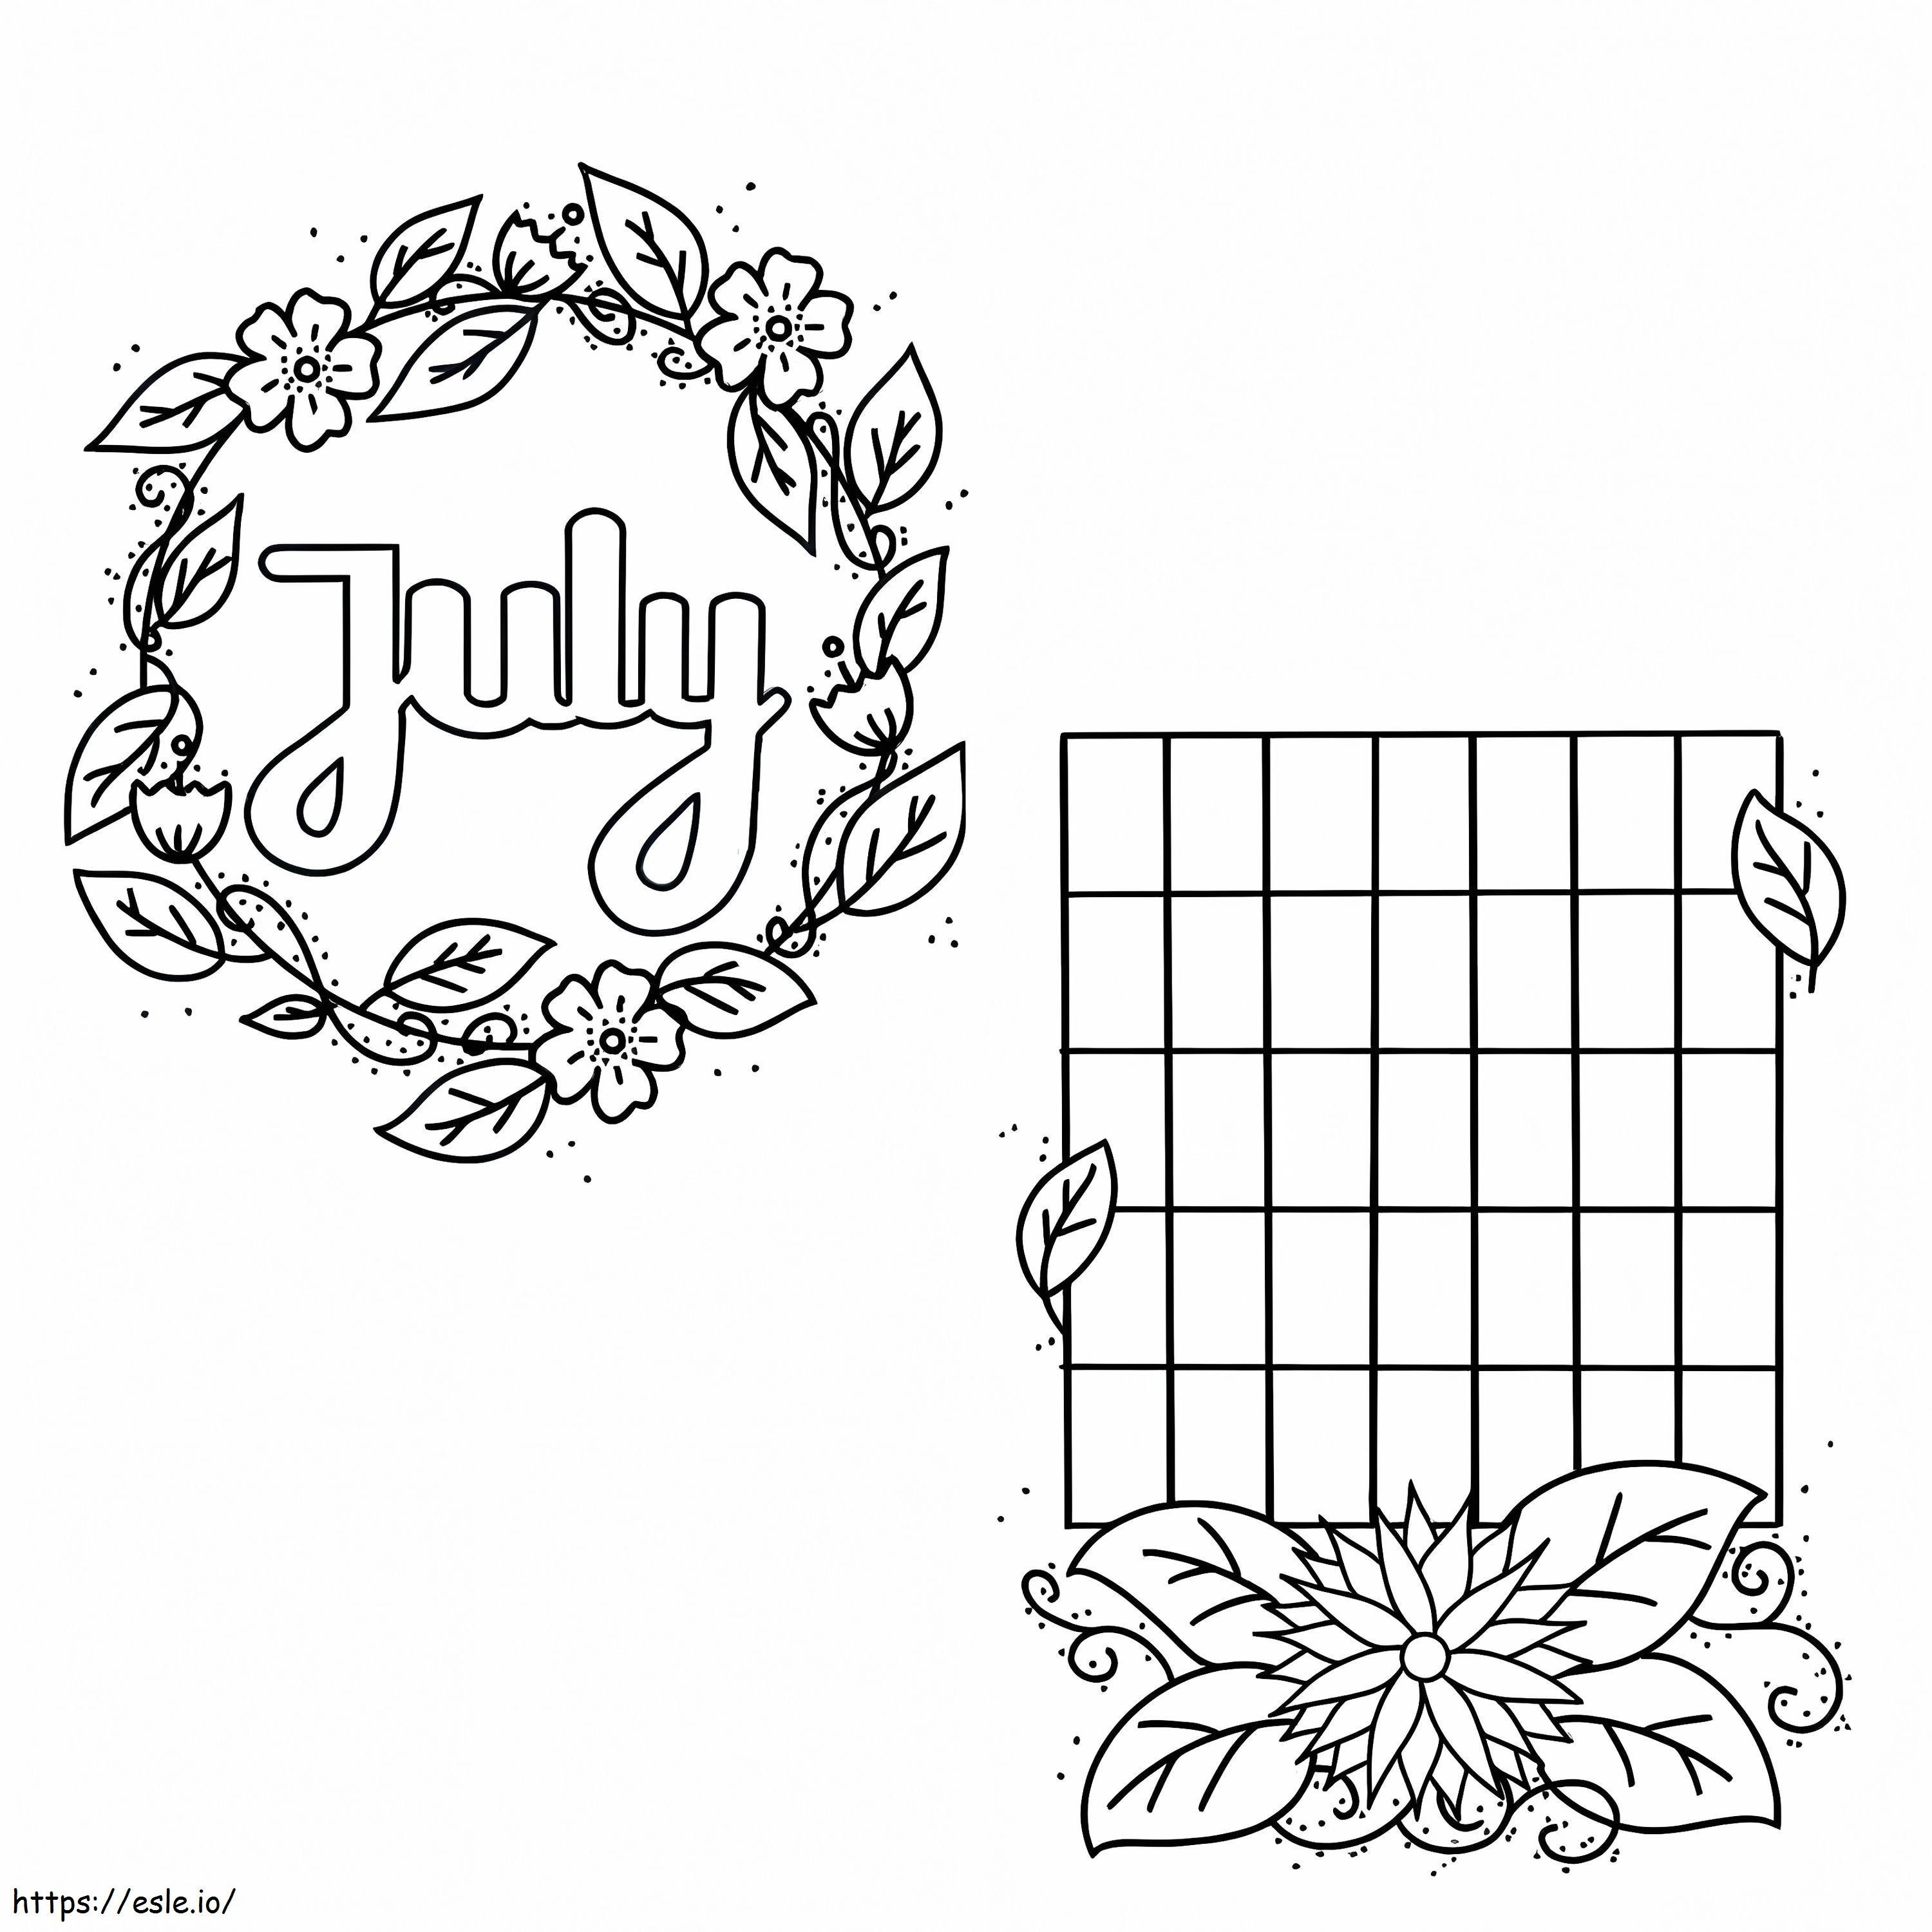 Calendarul și coroana lui iulie de colorat